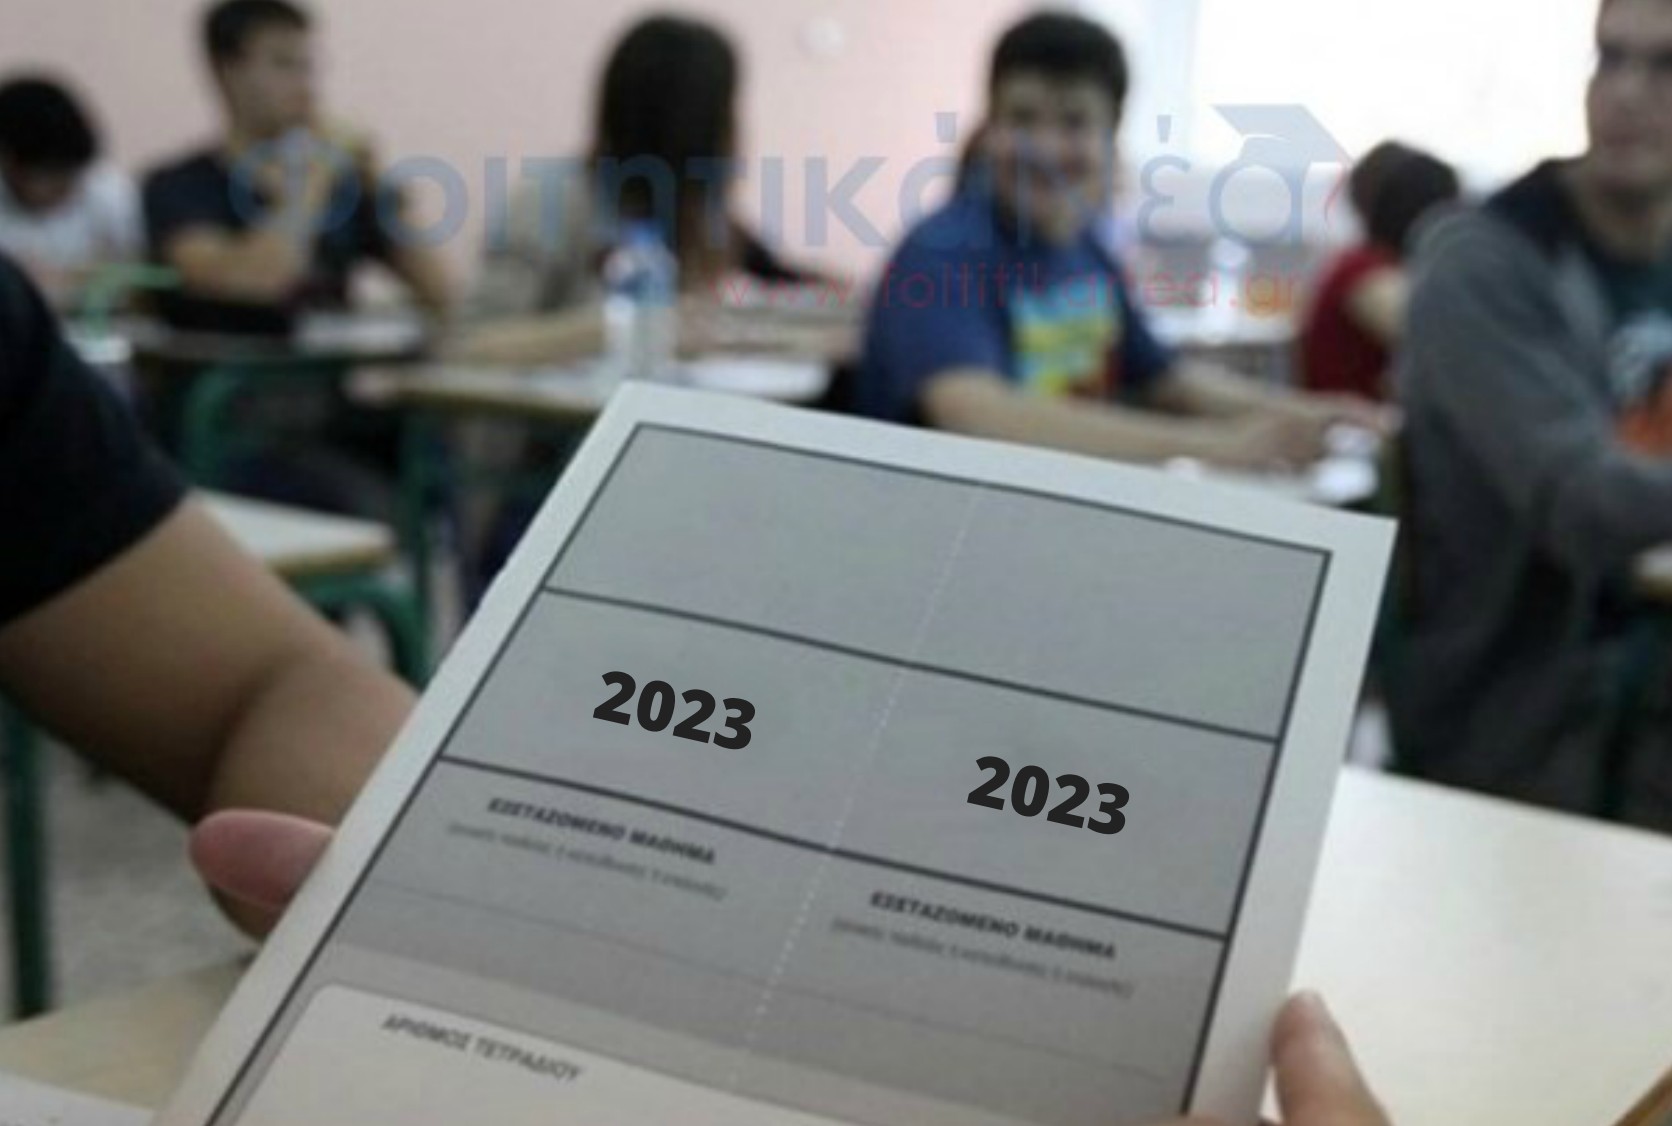  Πανελλήνιες 2023: Τροποποίηση κατάταξης Σχολών, Τμημάτων και Κατευθύνσεων στα Επιστημονικά Πεδία